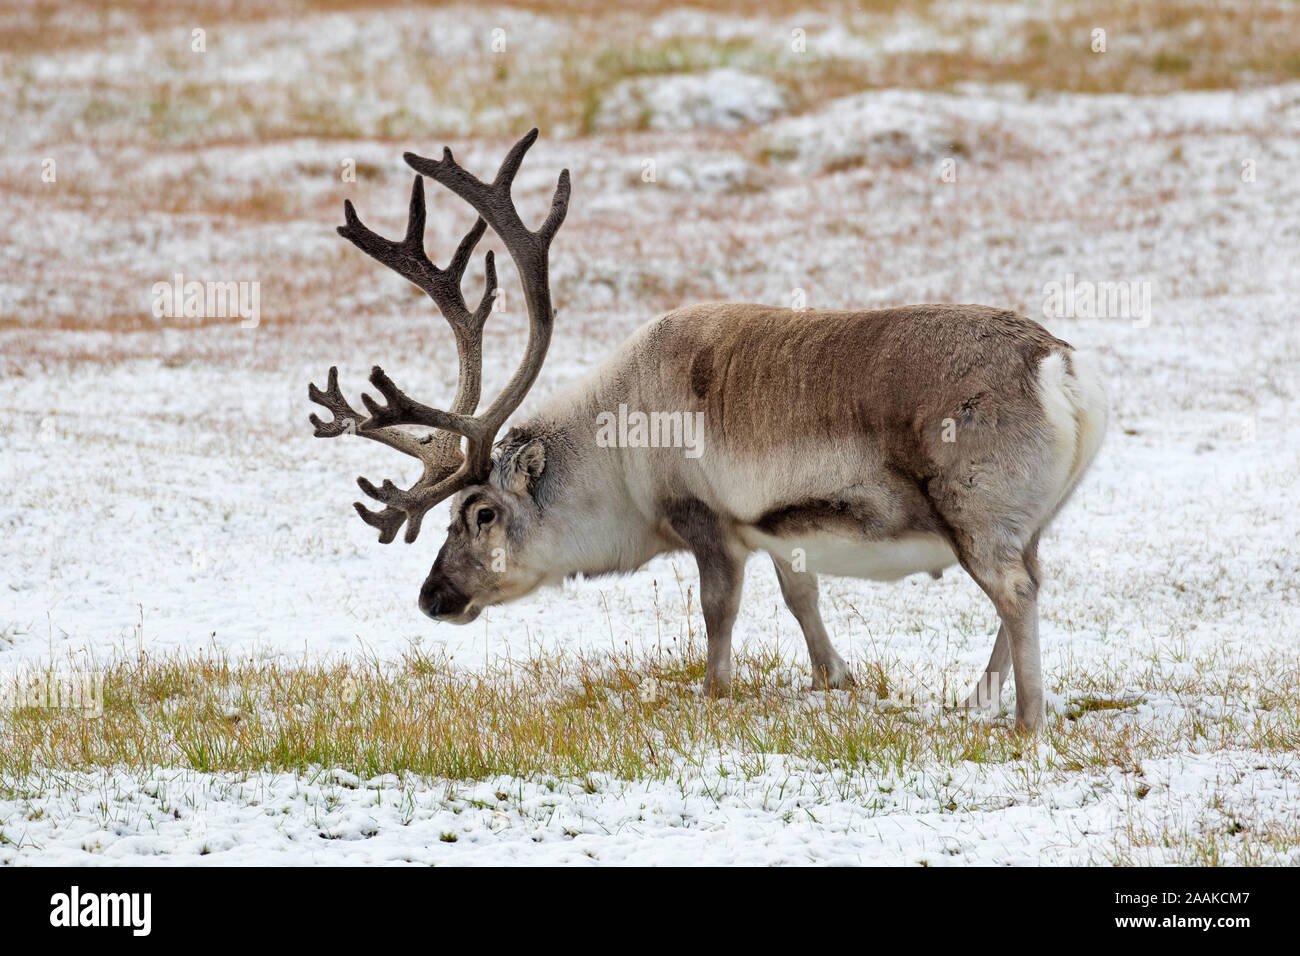 Renne du Svalbard (Rangifer tarandus platyrhynchus) homme / bull avec ses bois de velours qui se nourrissent de la toundra couvertes de neige en automne / fall, Norvège Banque D'Images